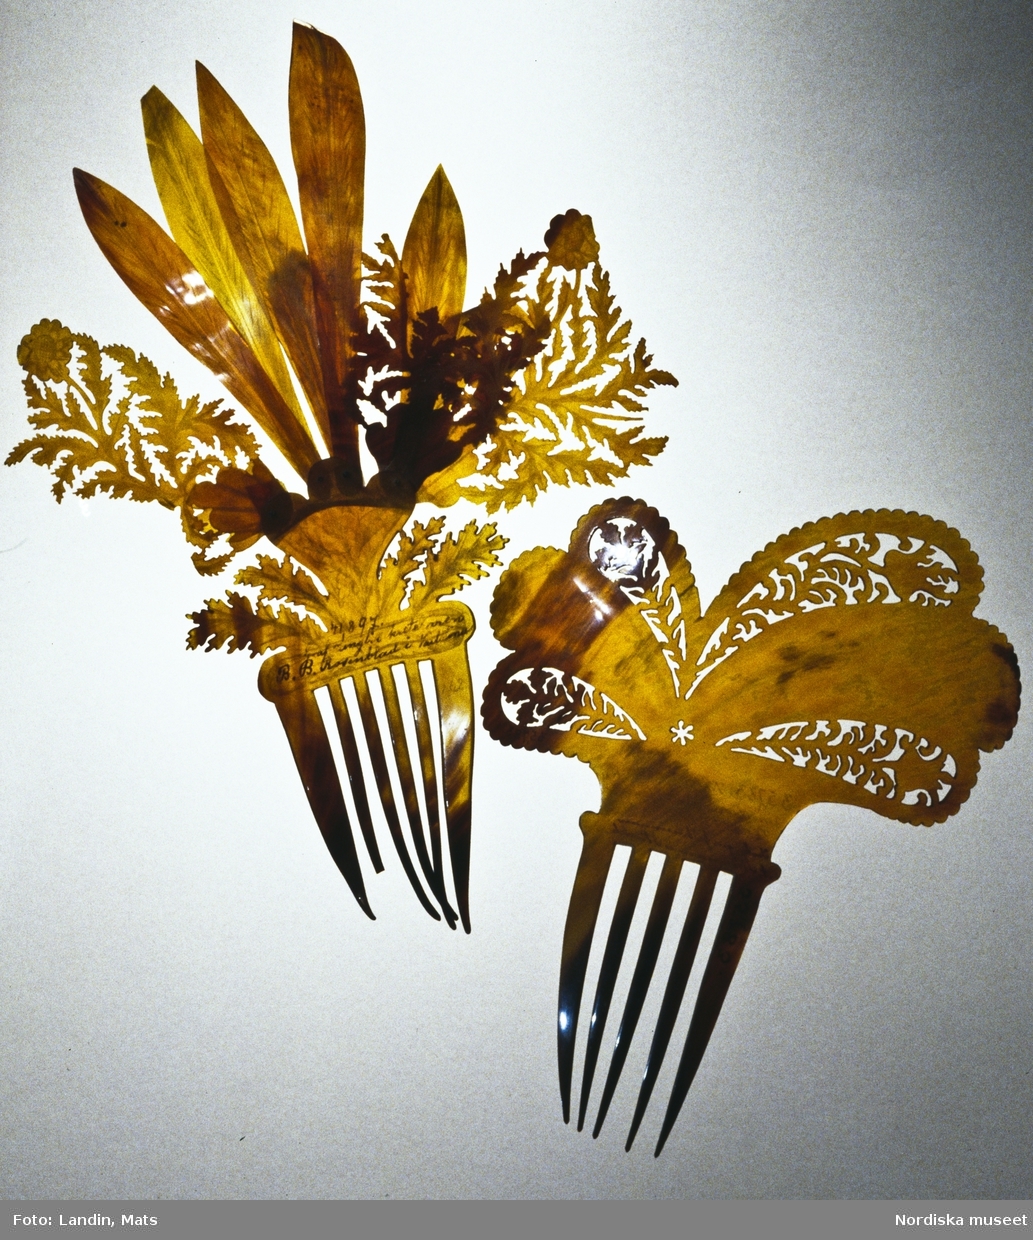 Kam. Kammar, hårprydnader, förvärvade under 1880-talet. Materialet är kaseinplast eller horn. Föremål ur Nordiska museets samling av smycken föremål invnr: 41897 och 35783.
